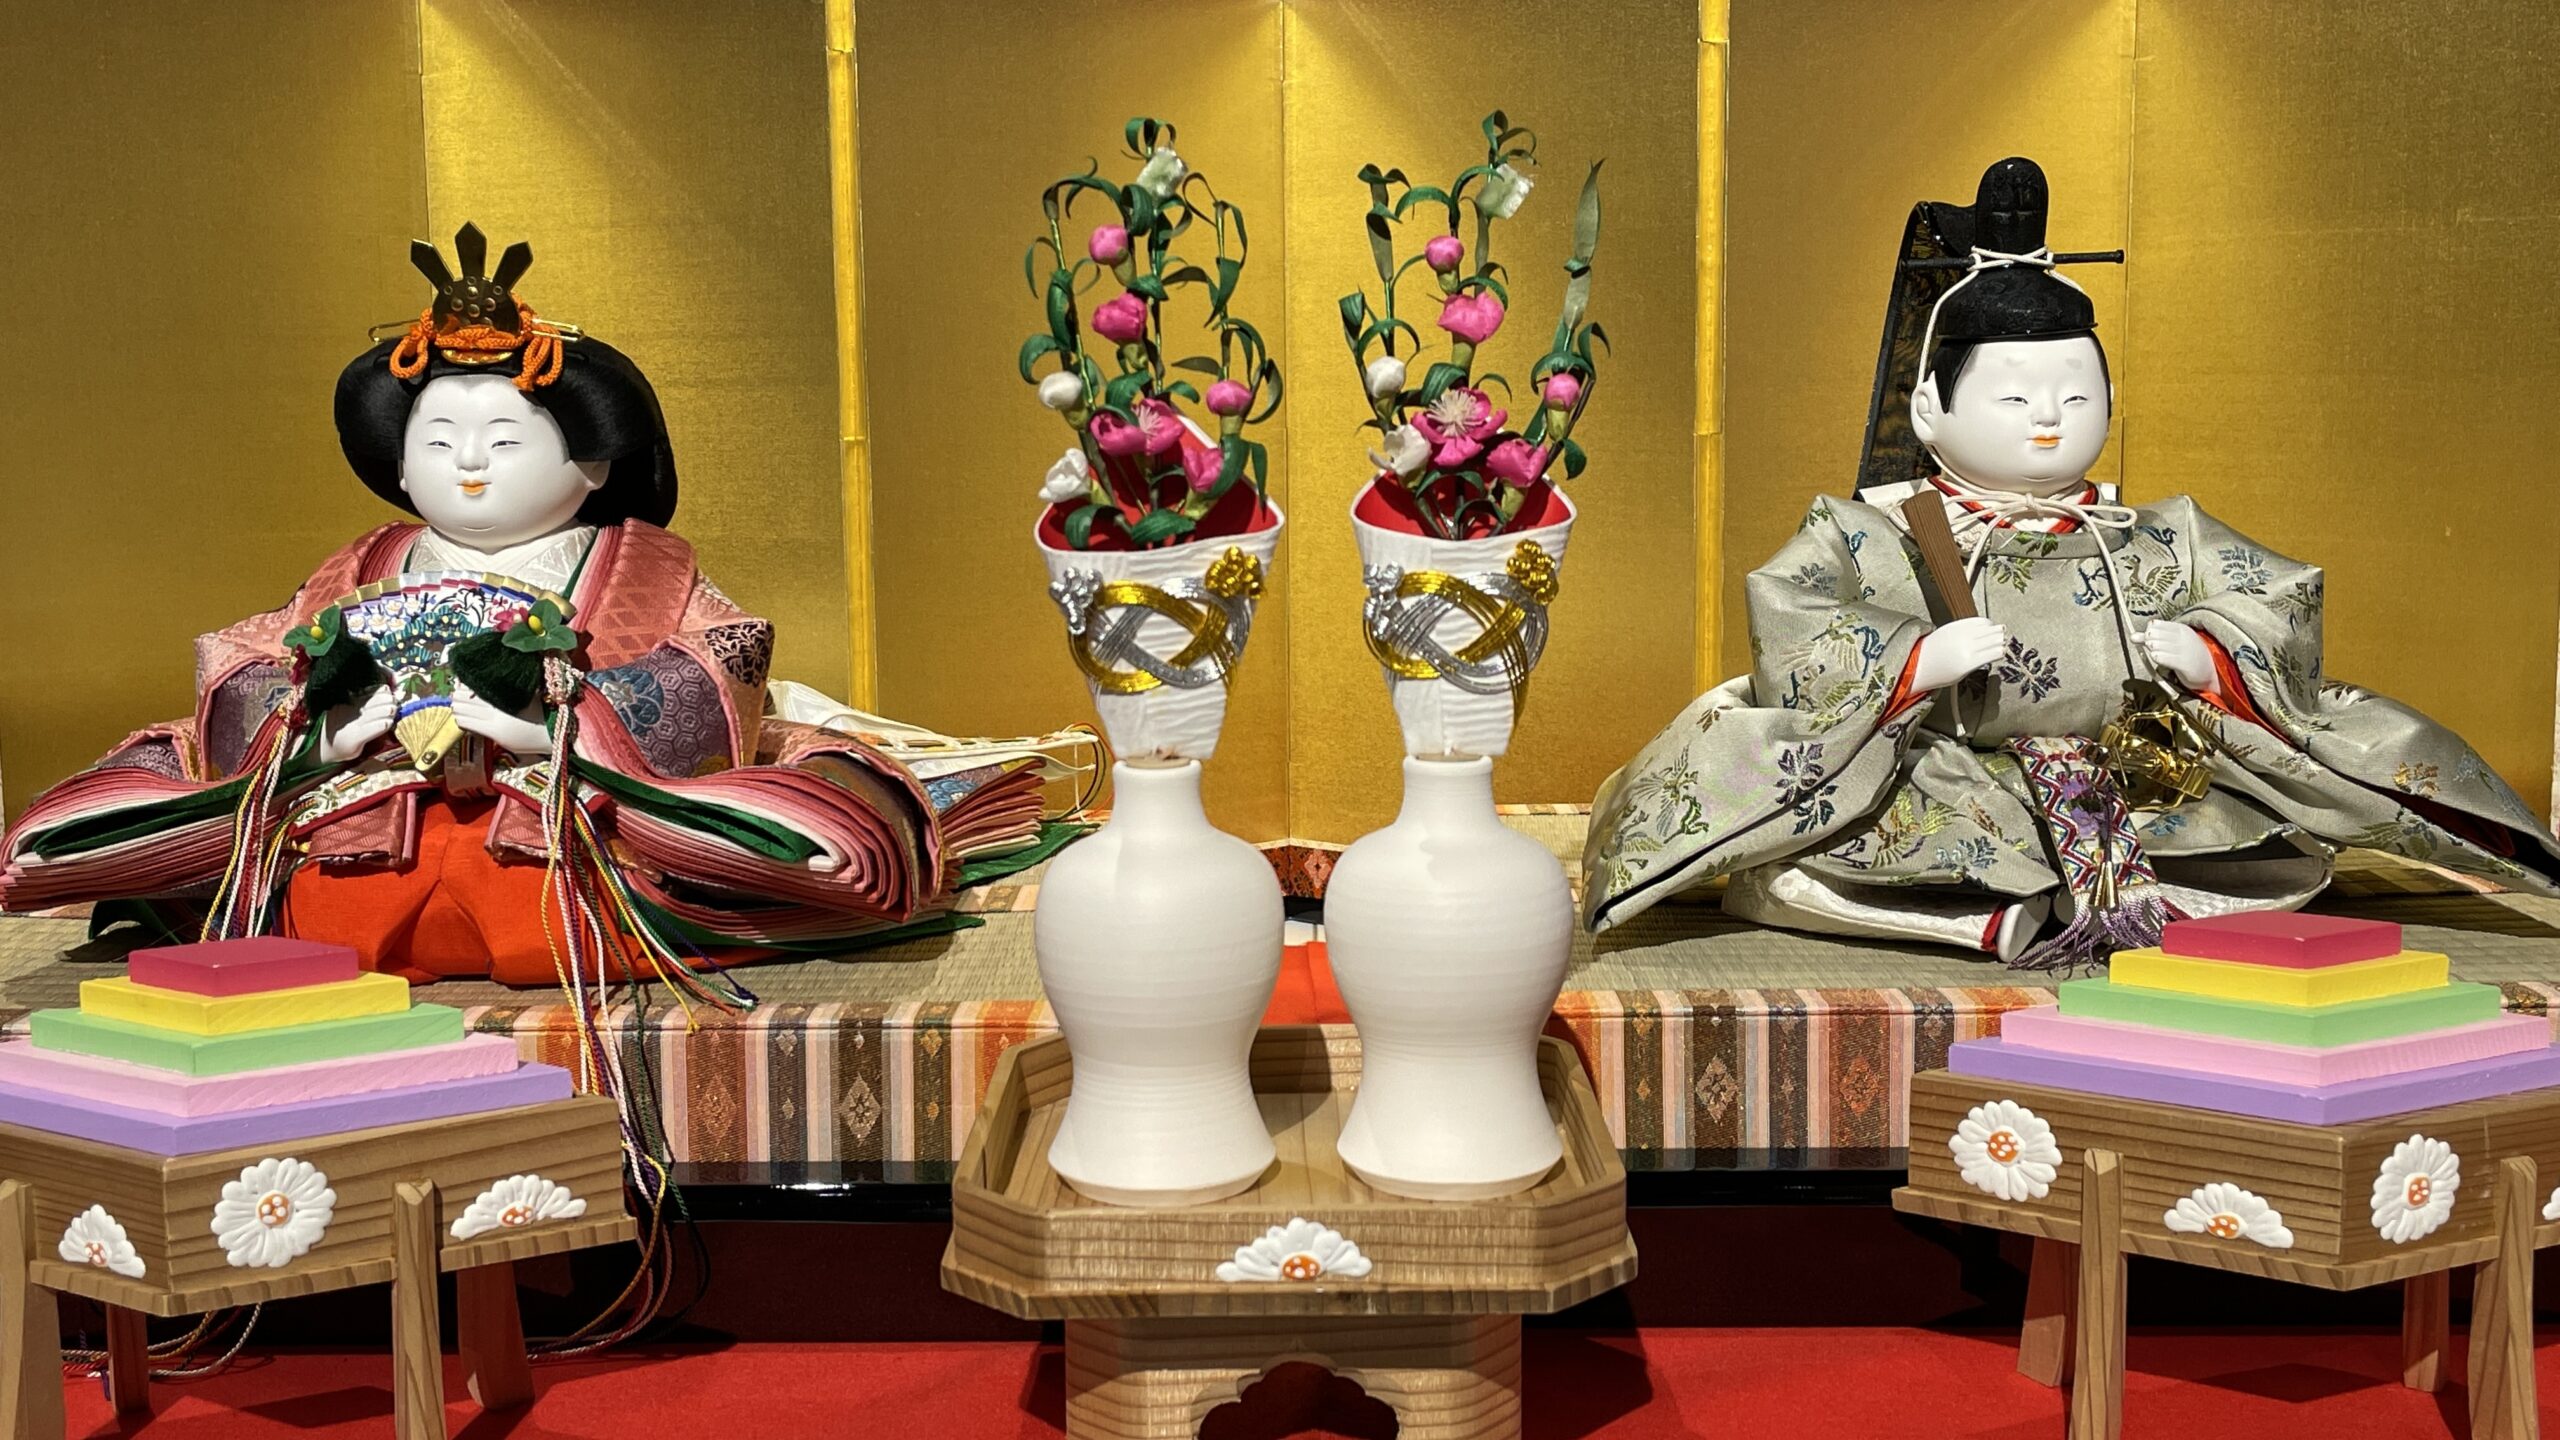 ひな祭り「桃の節句」と京都の伝統産業 | 京都工房コンシェルジュ